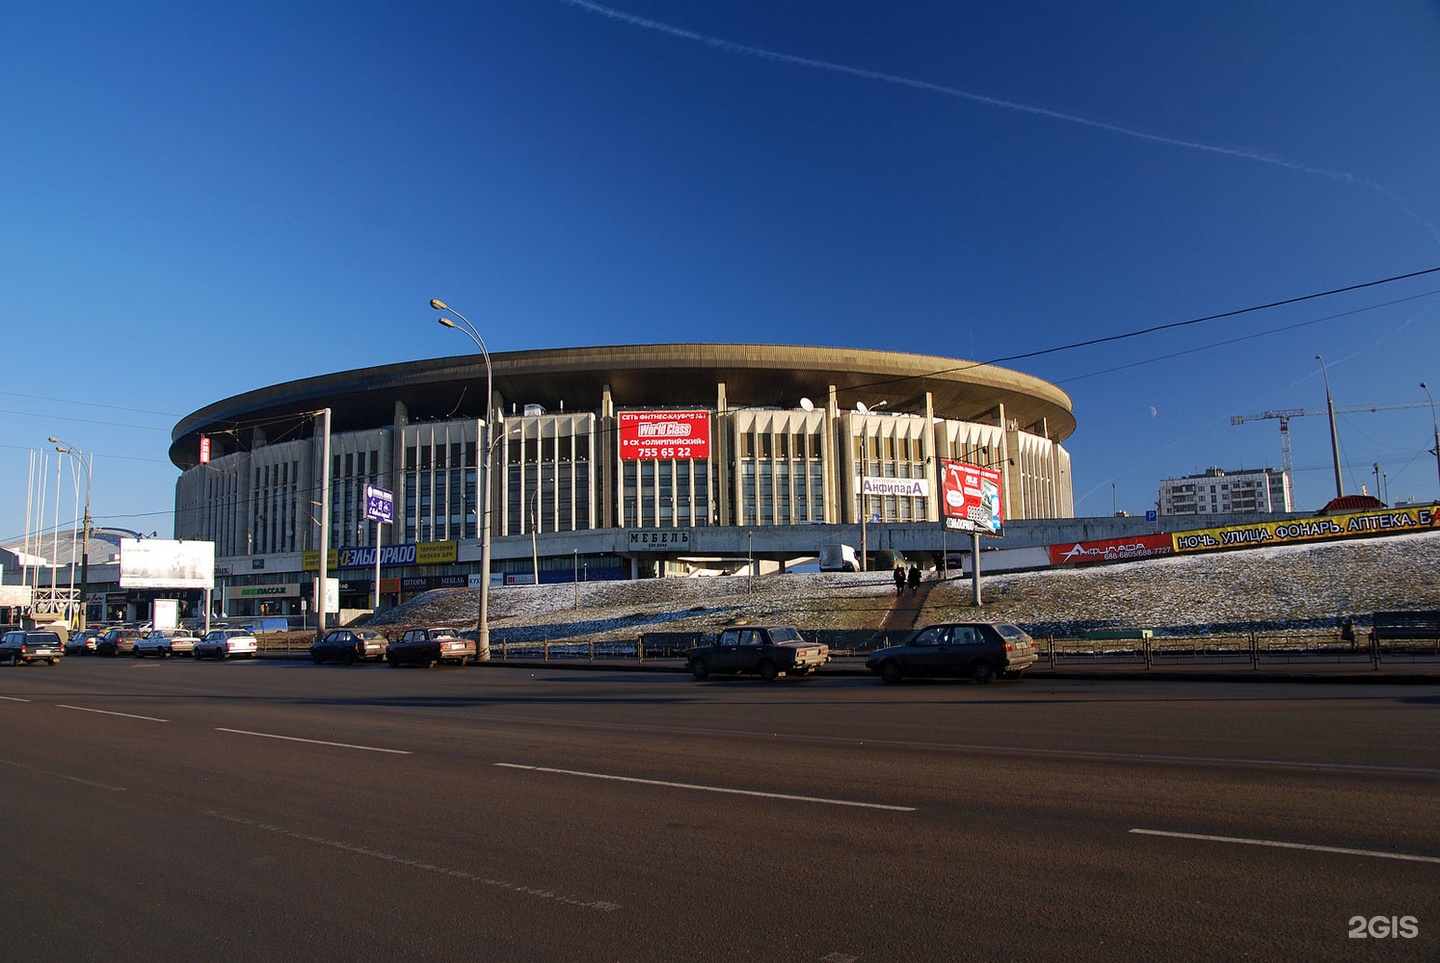 олимпийский дворец спорта москва разбирают